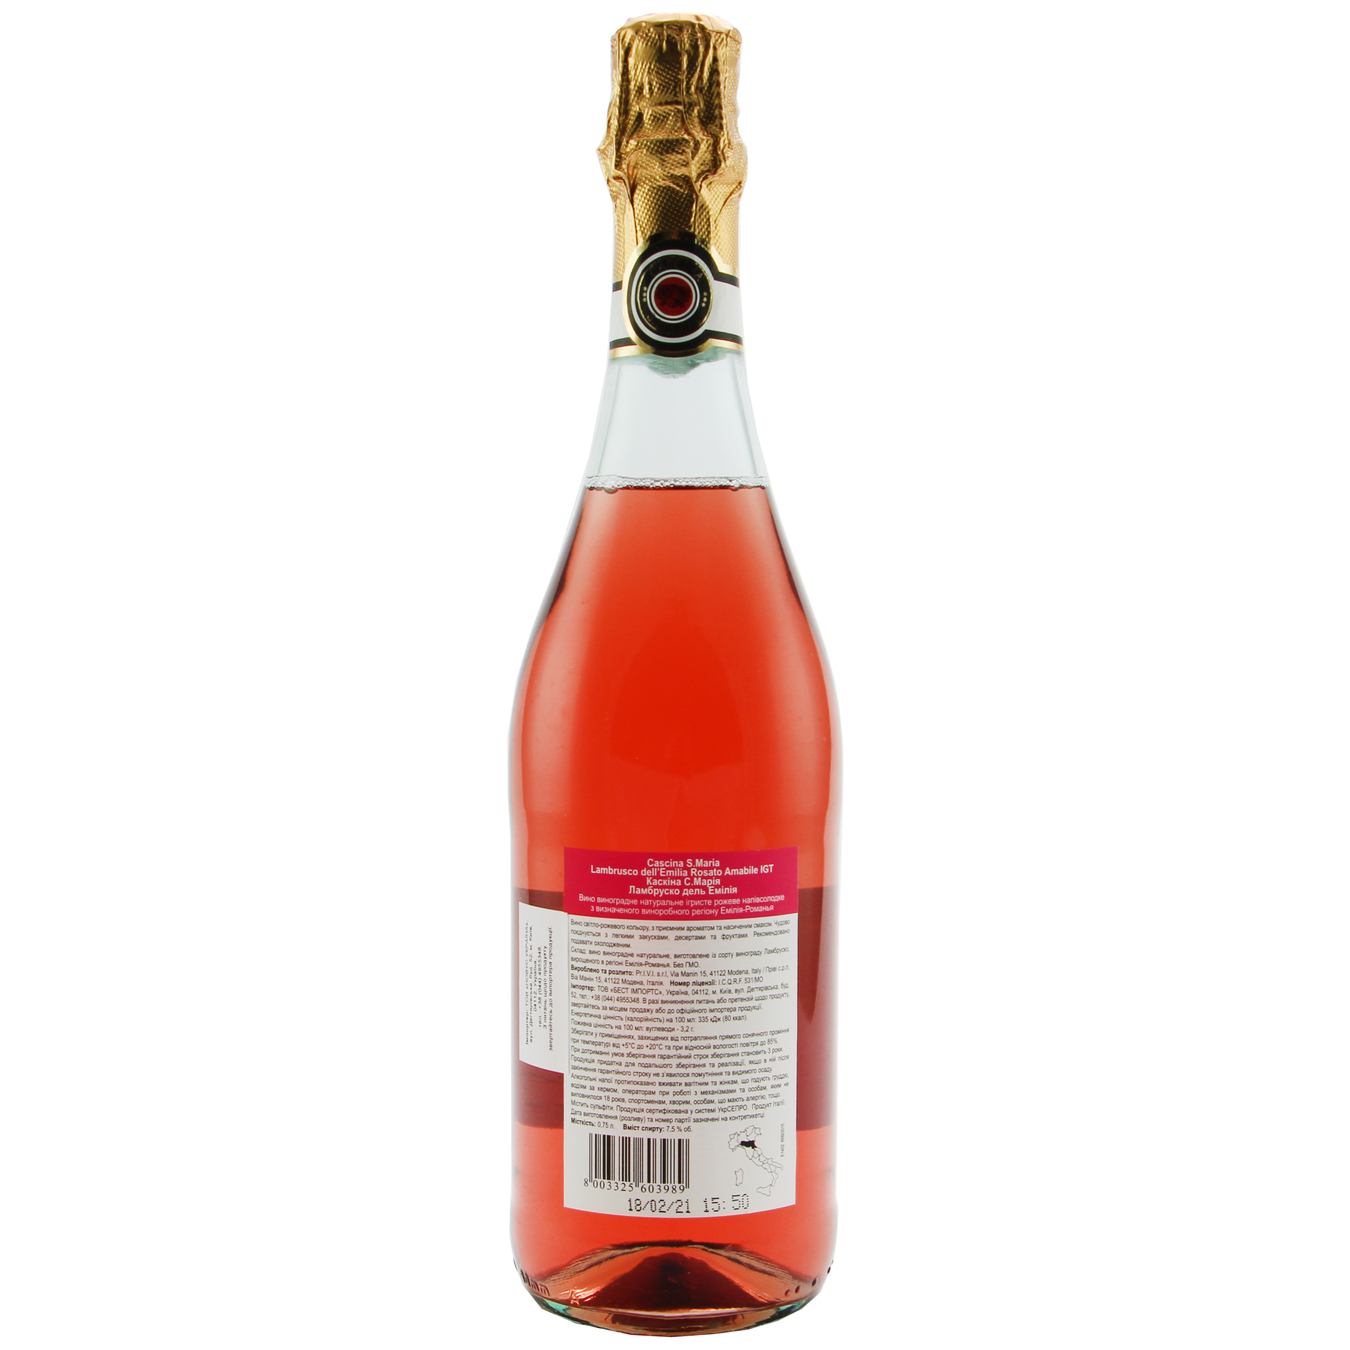 Sparkling wine Cascina S.Maria Lambrusco dell'Emilia Rosato Amabile IGT pink semi-sweet 7,5% 0,75l 2